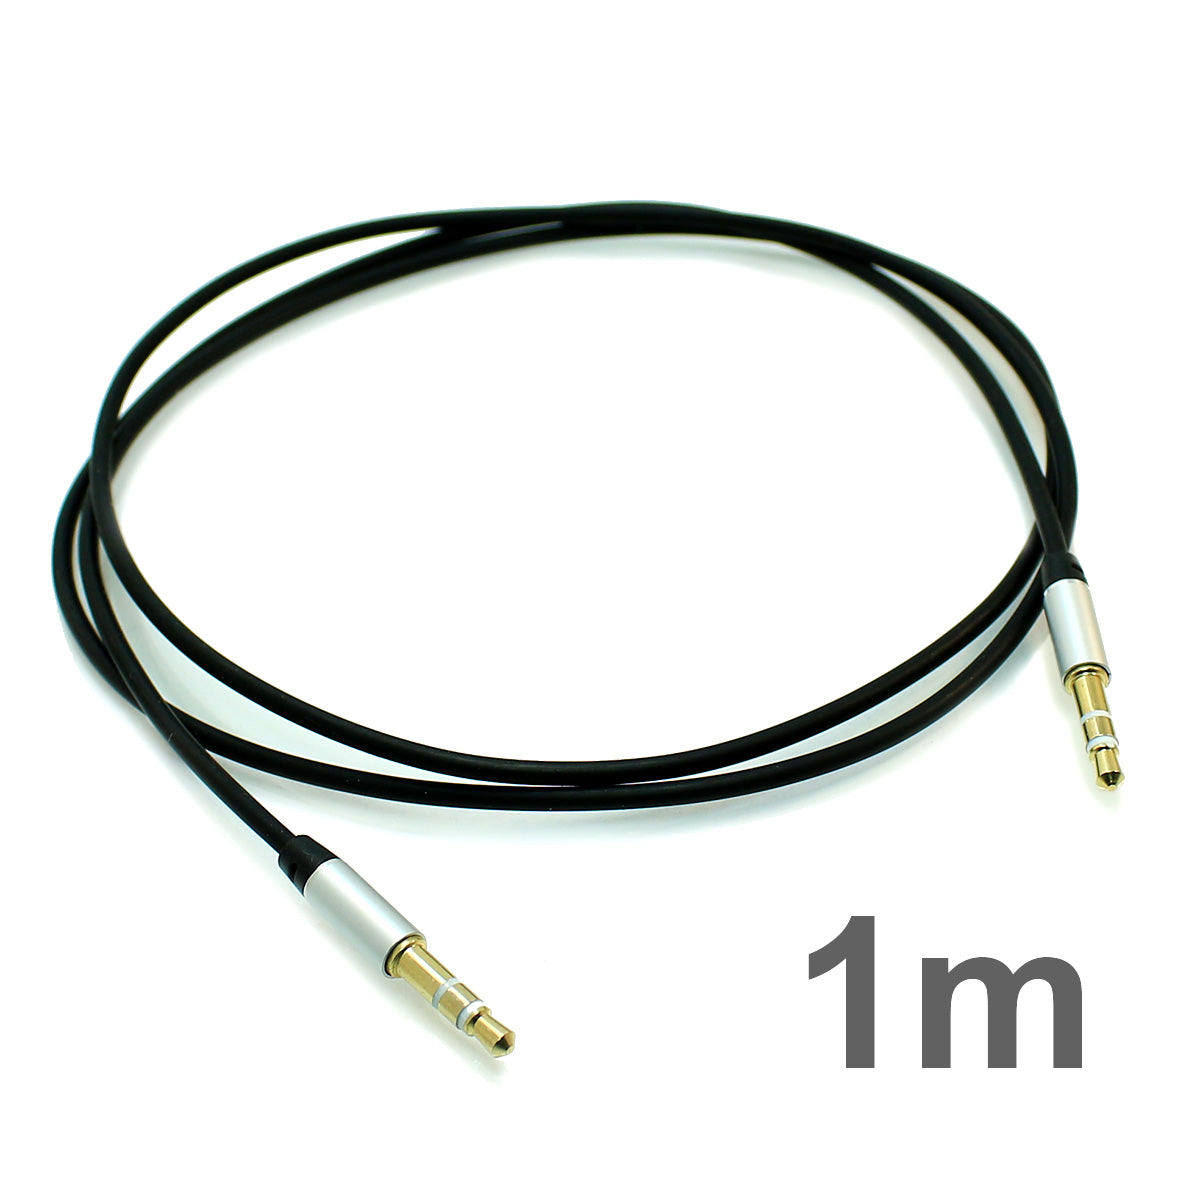 Mit diesem Set erhalten Sie zwei AUX-Audio-Kabel mit 3,5 mm Klinkenstecker in Schwarz. Die Kabel eignen sich zum Anschluss von MP3-Playern, iPhones, iPods und anderen Geräten mit einem 3,5-mm-Anschluss.